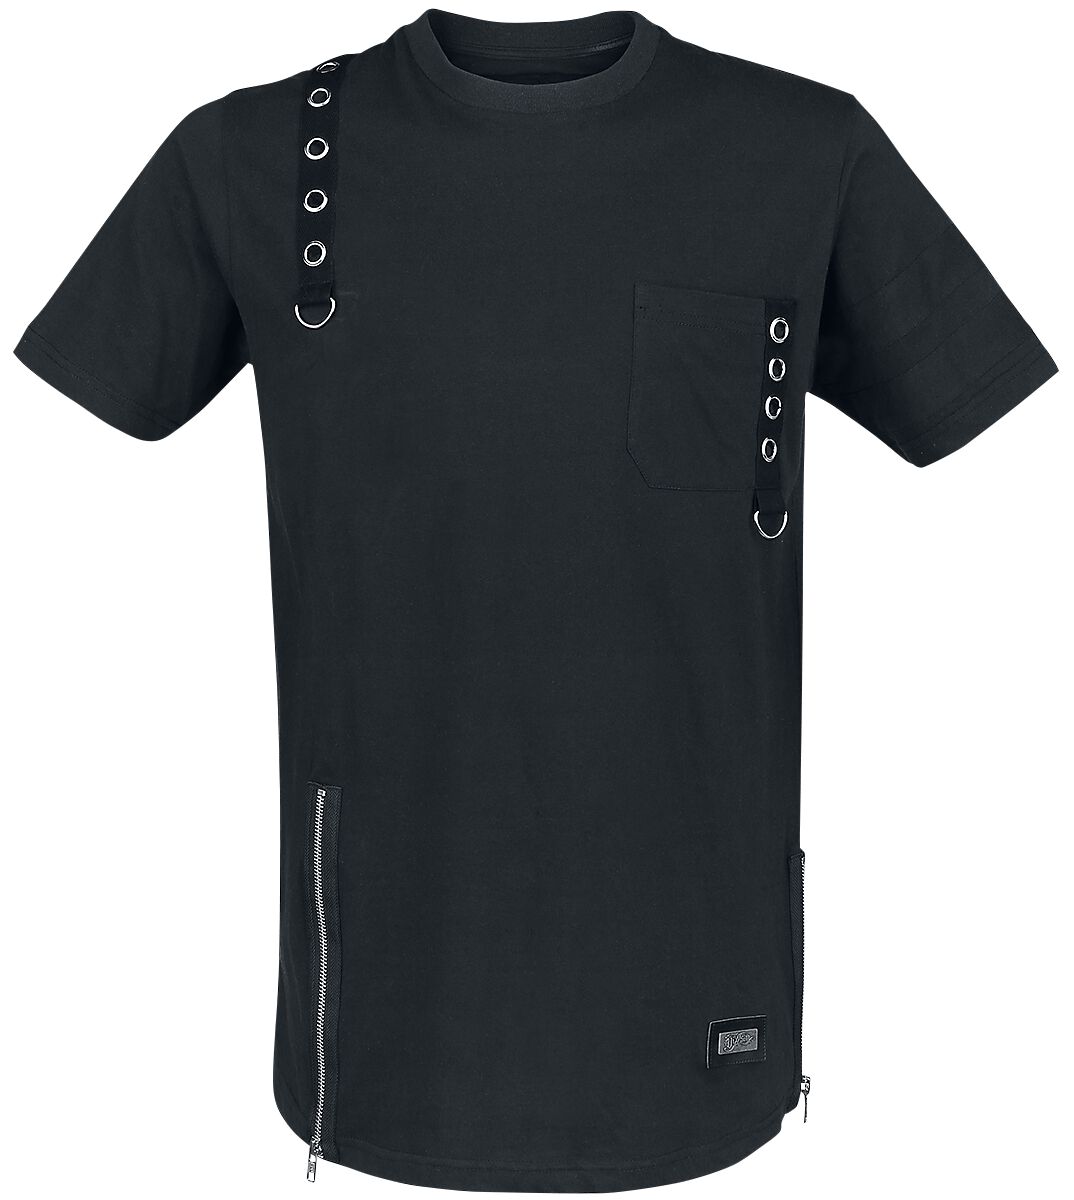 Vixxsin - Gothic T-Shirt - Jash Top - S bis 4XL - für Männer - Größe XL - schwarz